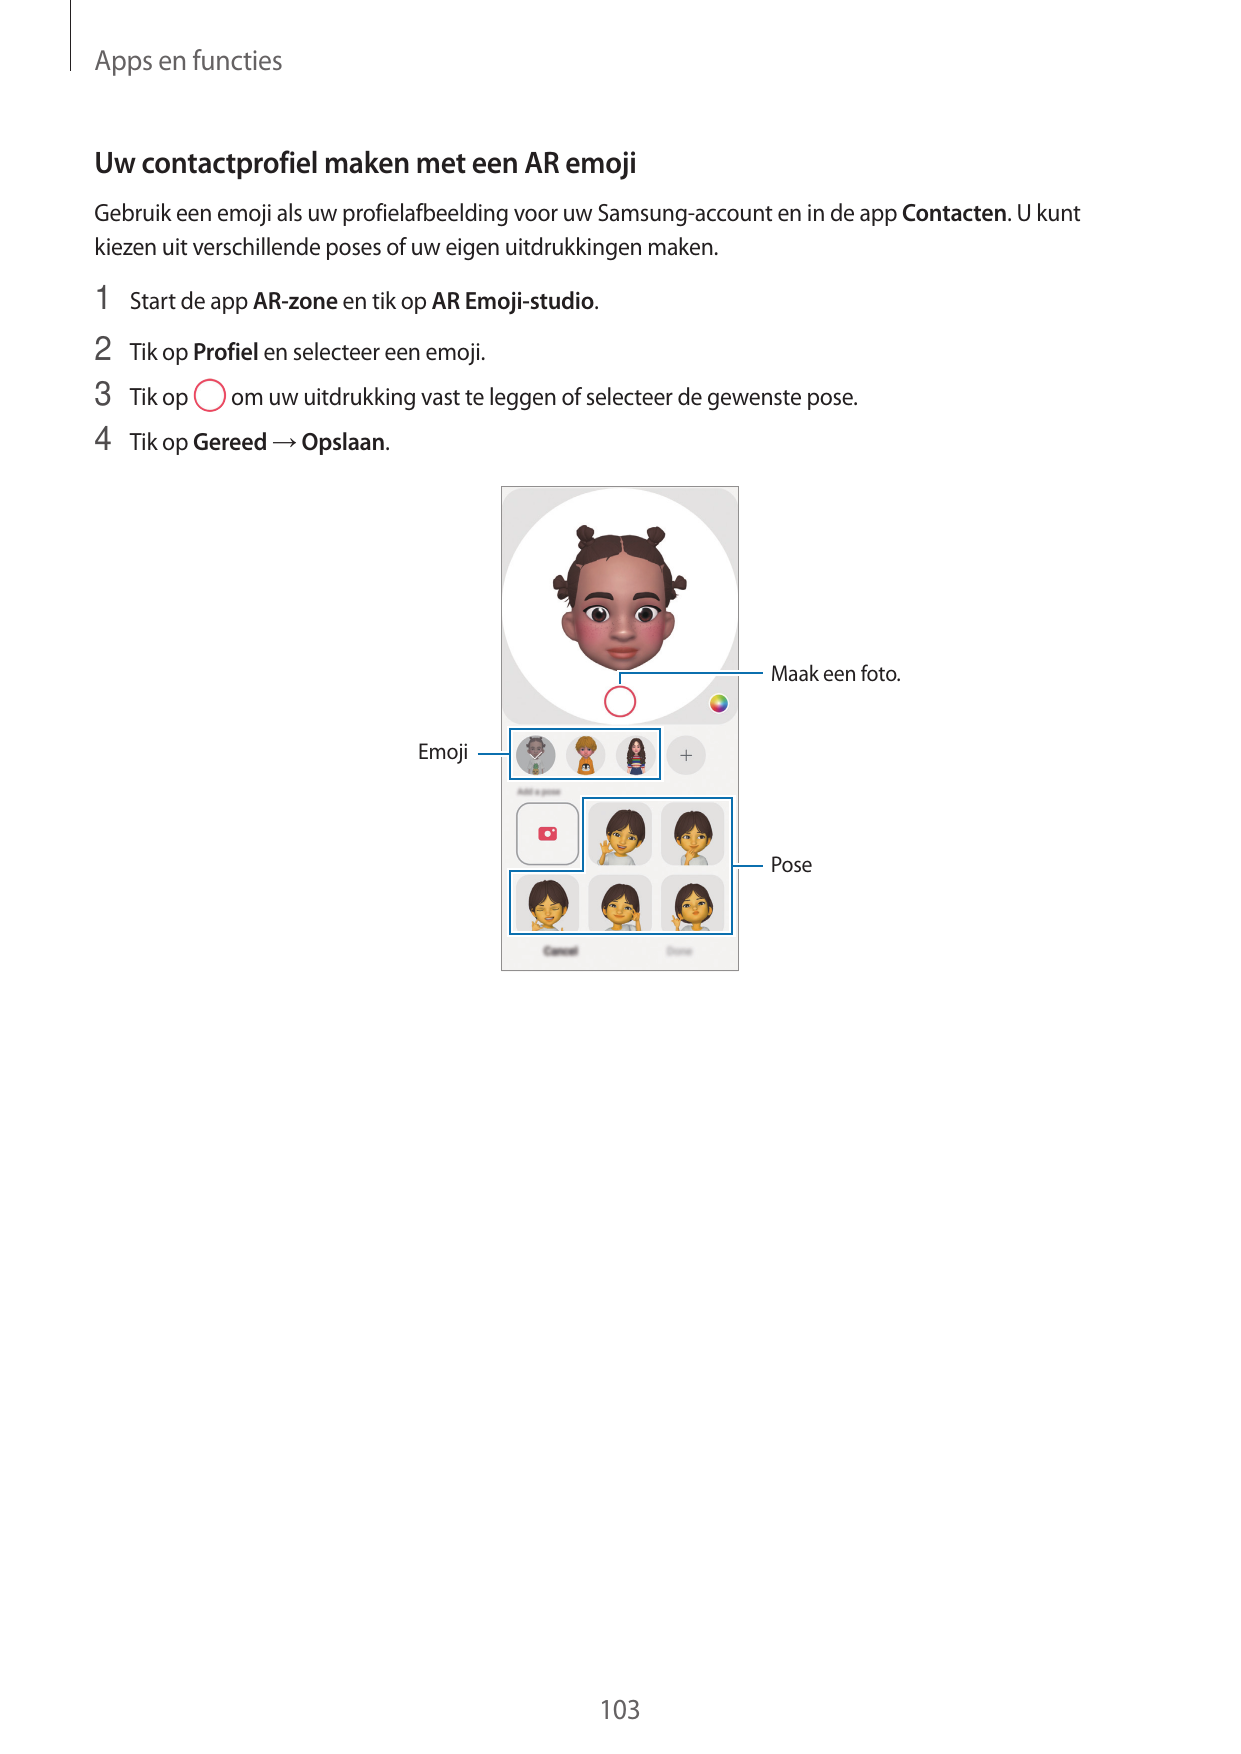 Apps en functiesUw contactprofiel maken met een AR emojiGebruik een emoji als uw profielafbeelding voor uw Samsung-account en in